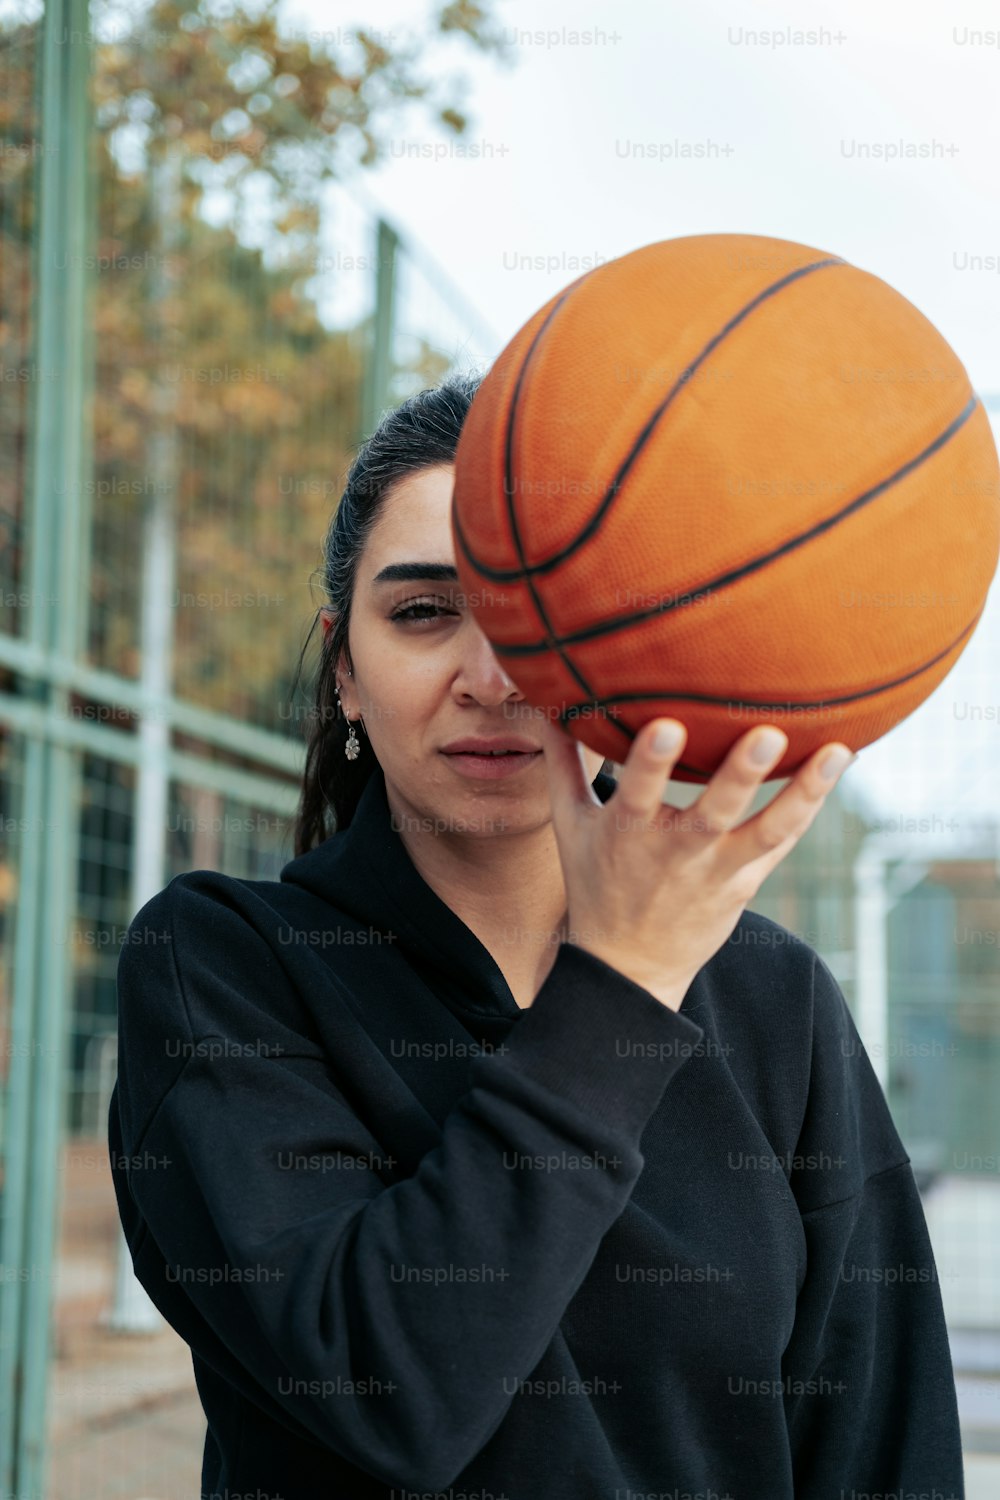 Une femme tenant un ballon de basket contre son visage